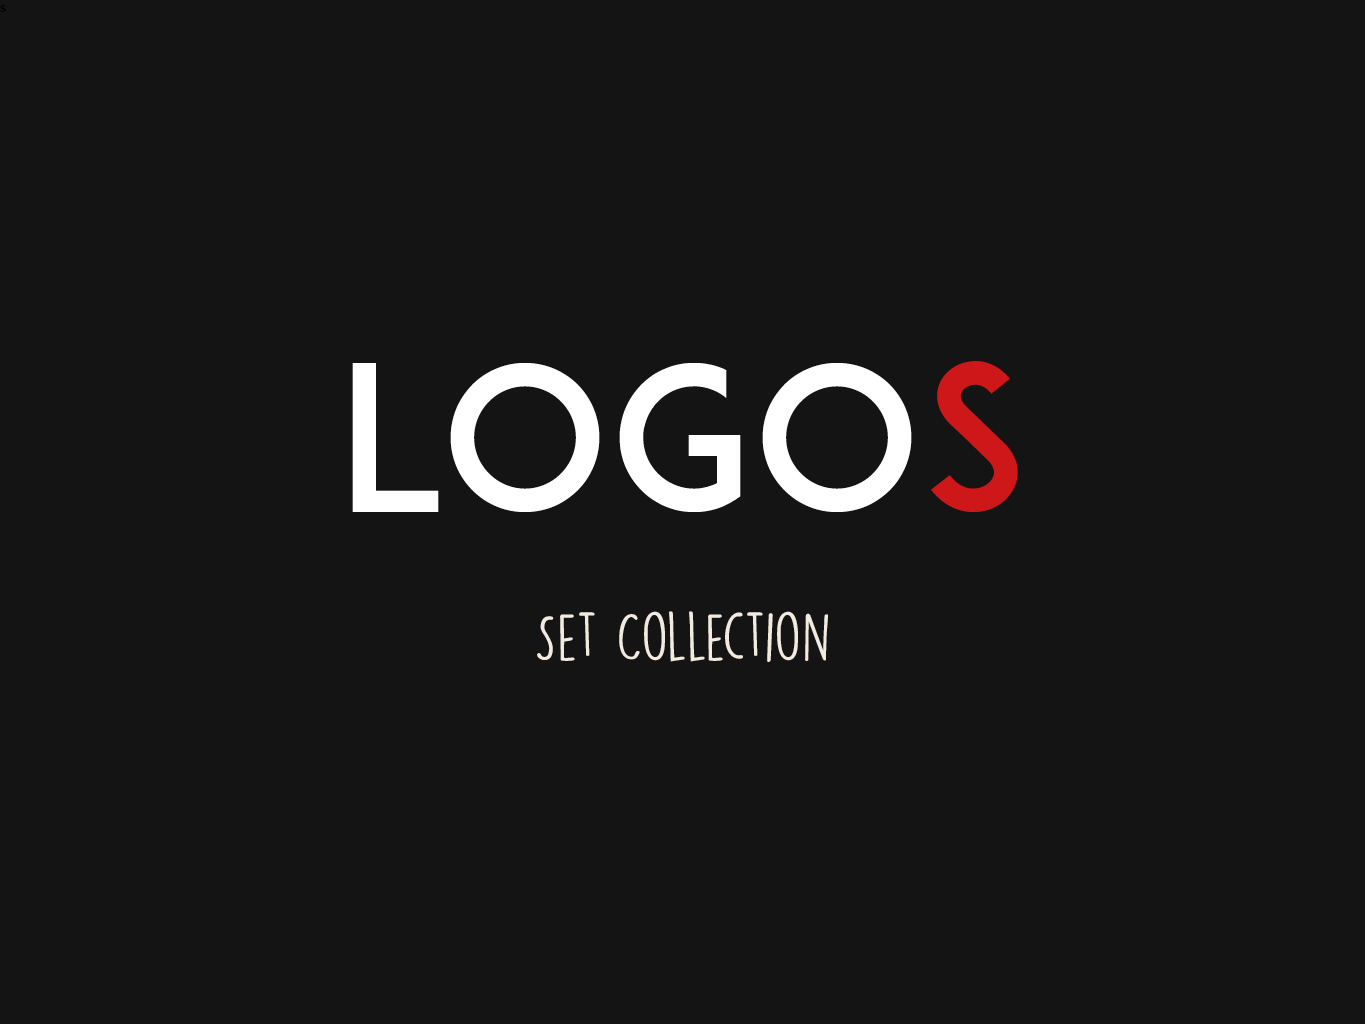 Logos Set Collection